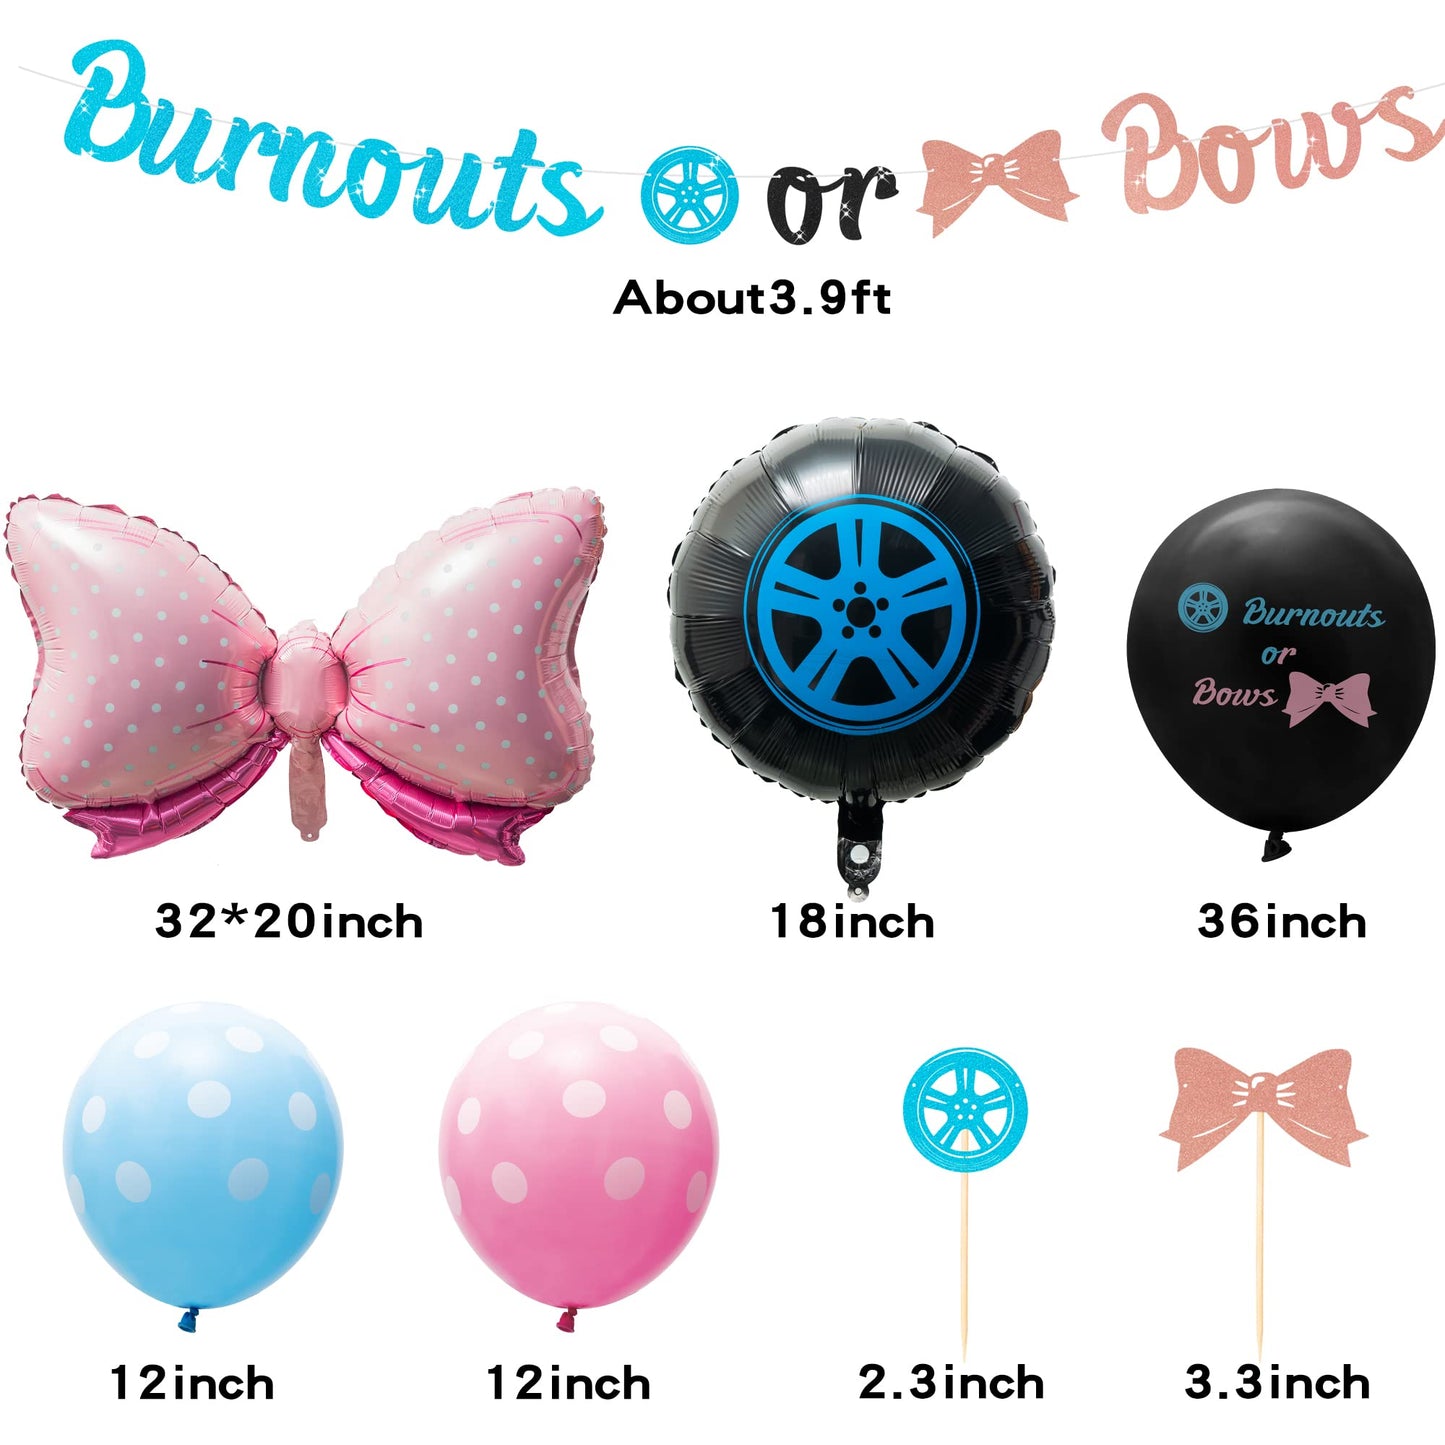 Burnouts or Bows decoration kit contents